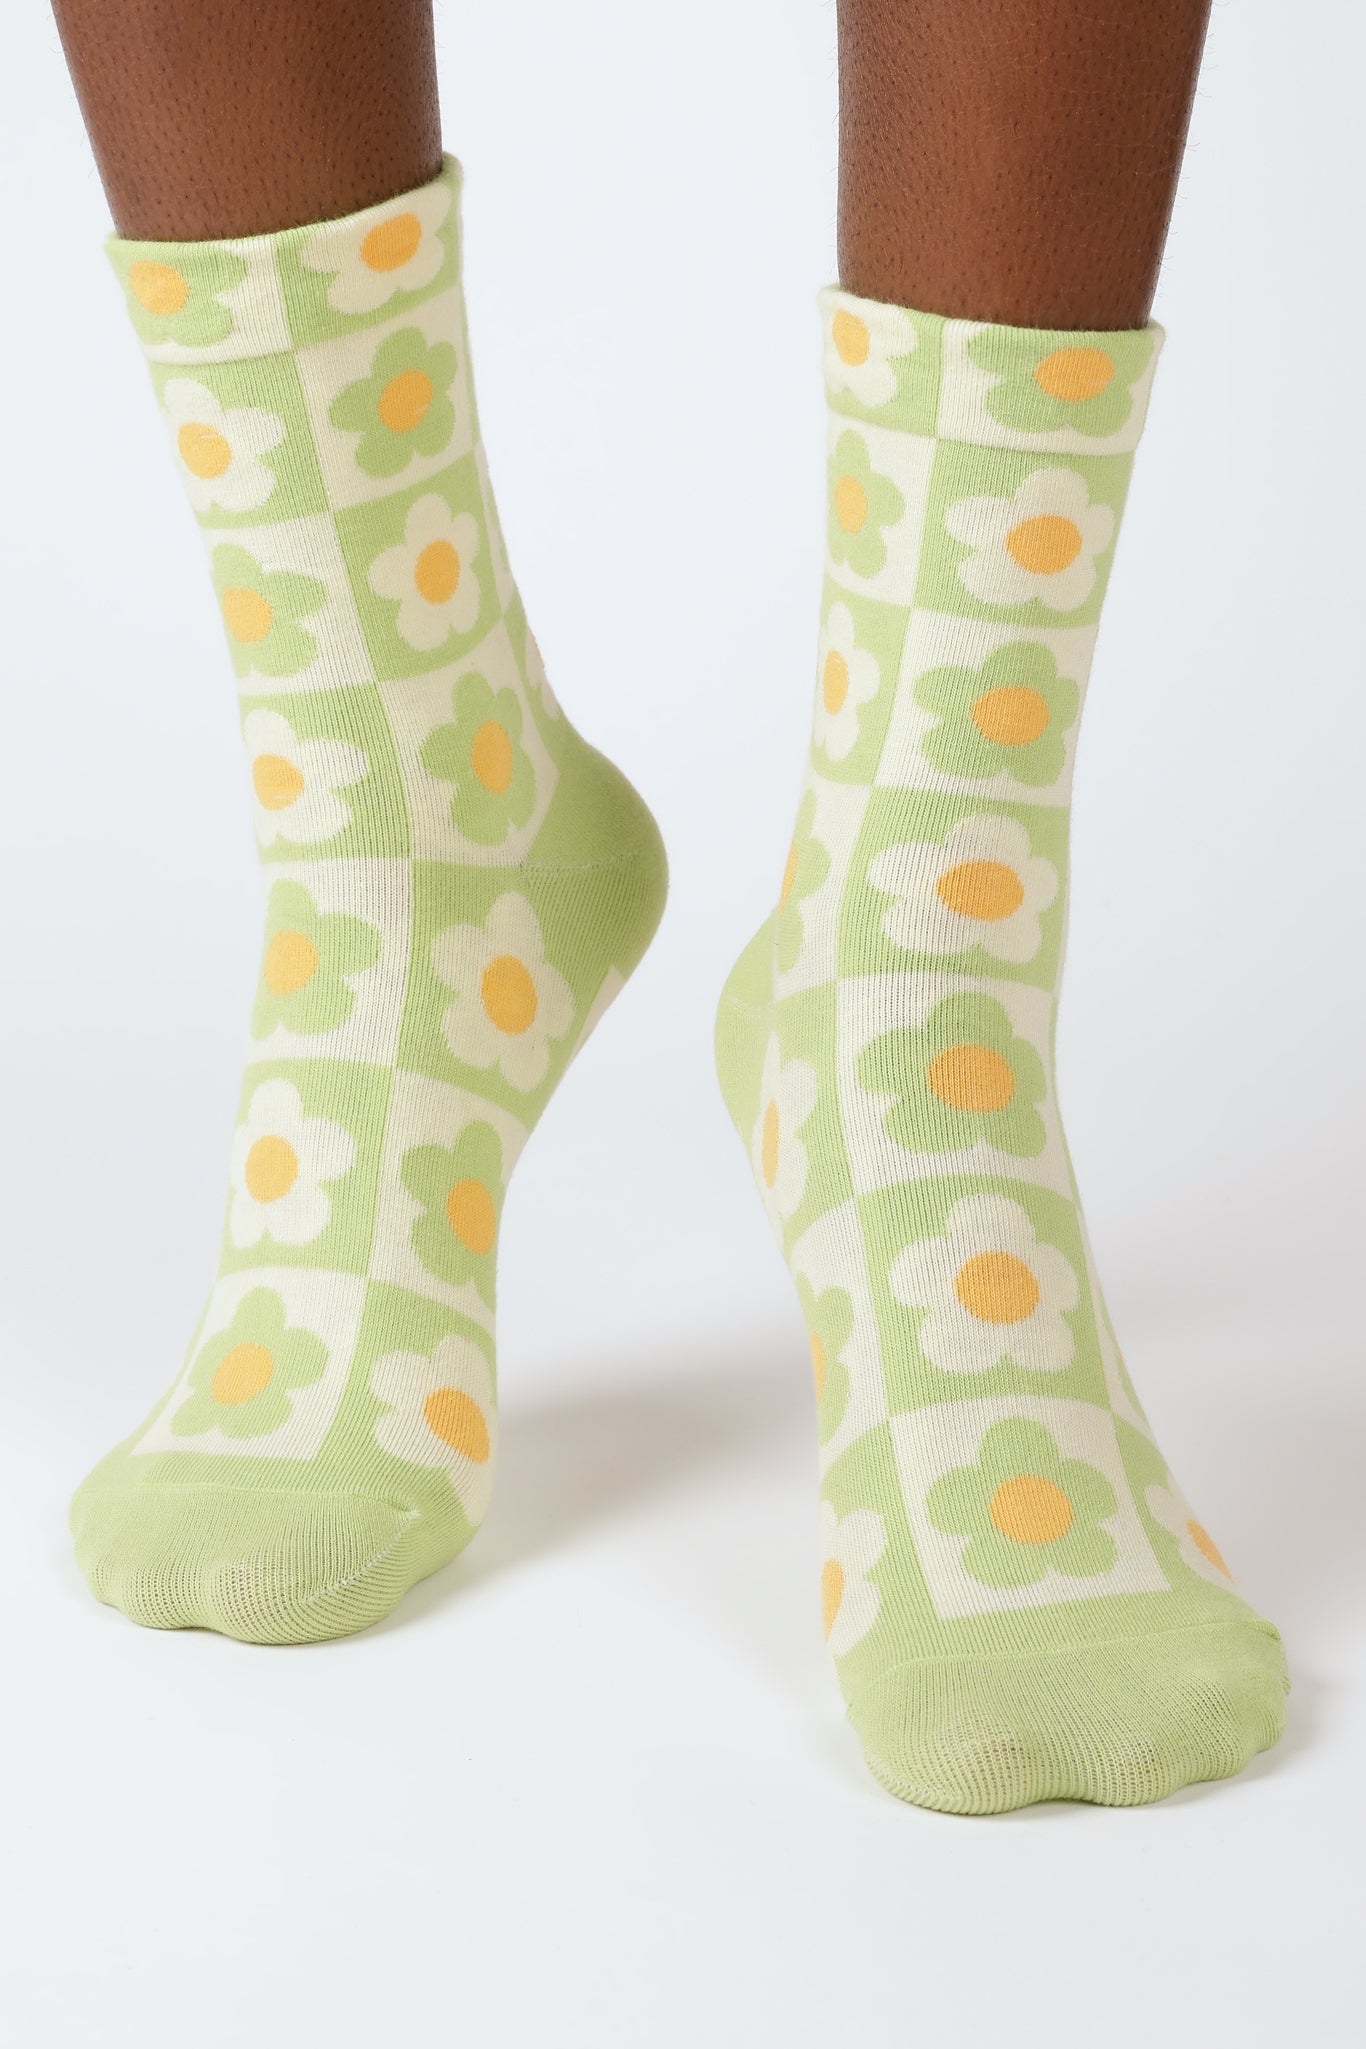 Green daisy checkered socks